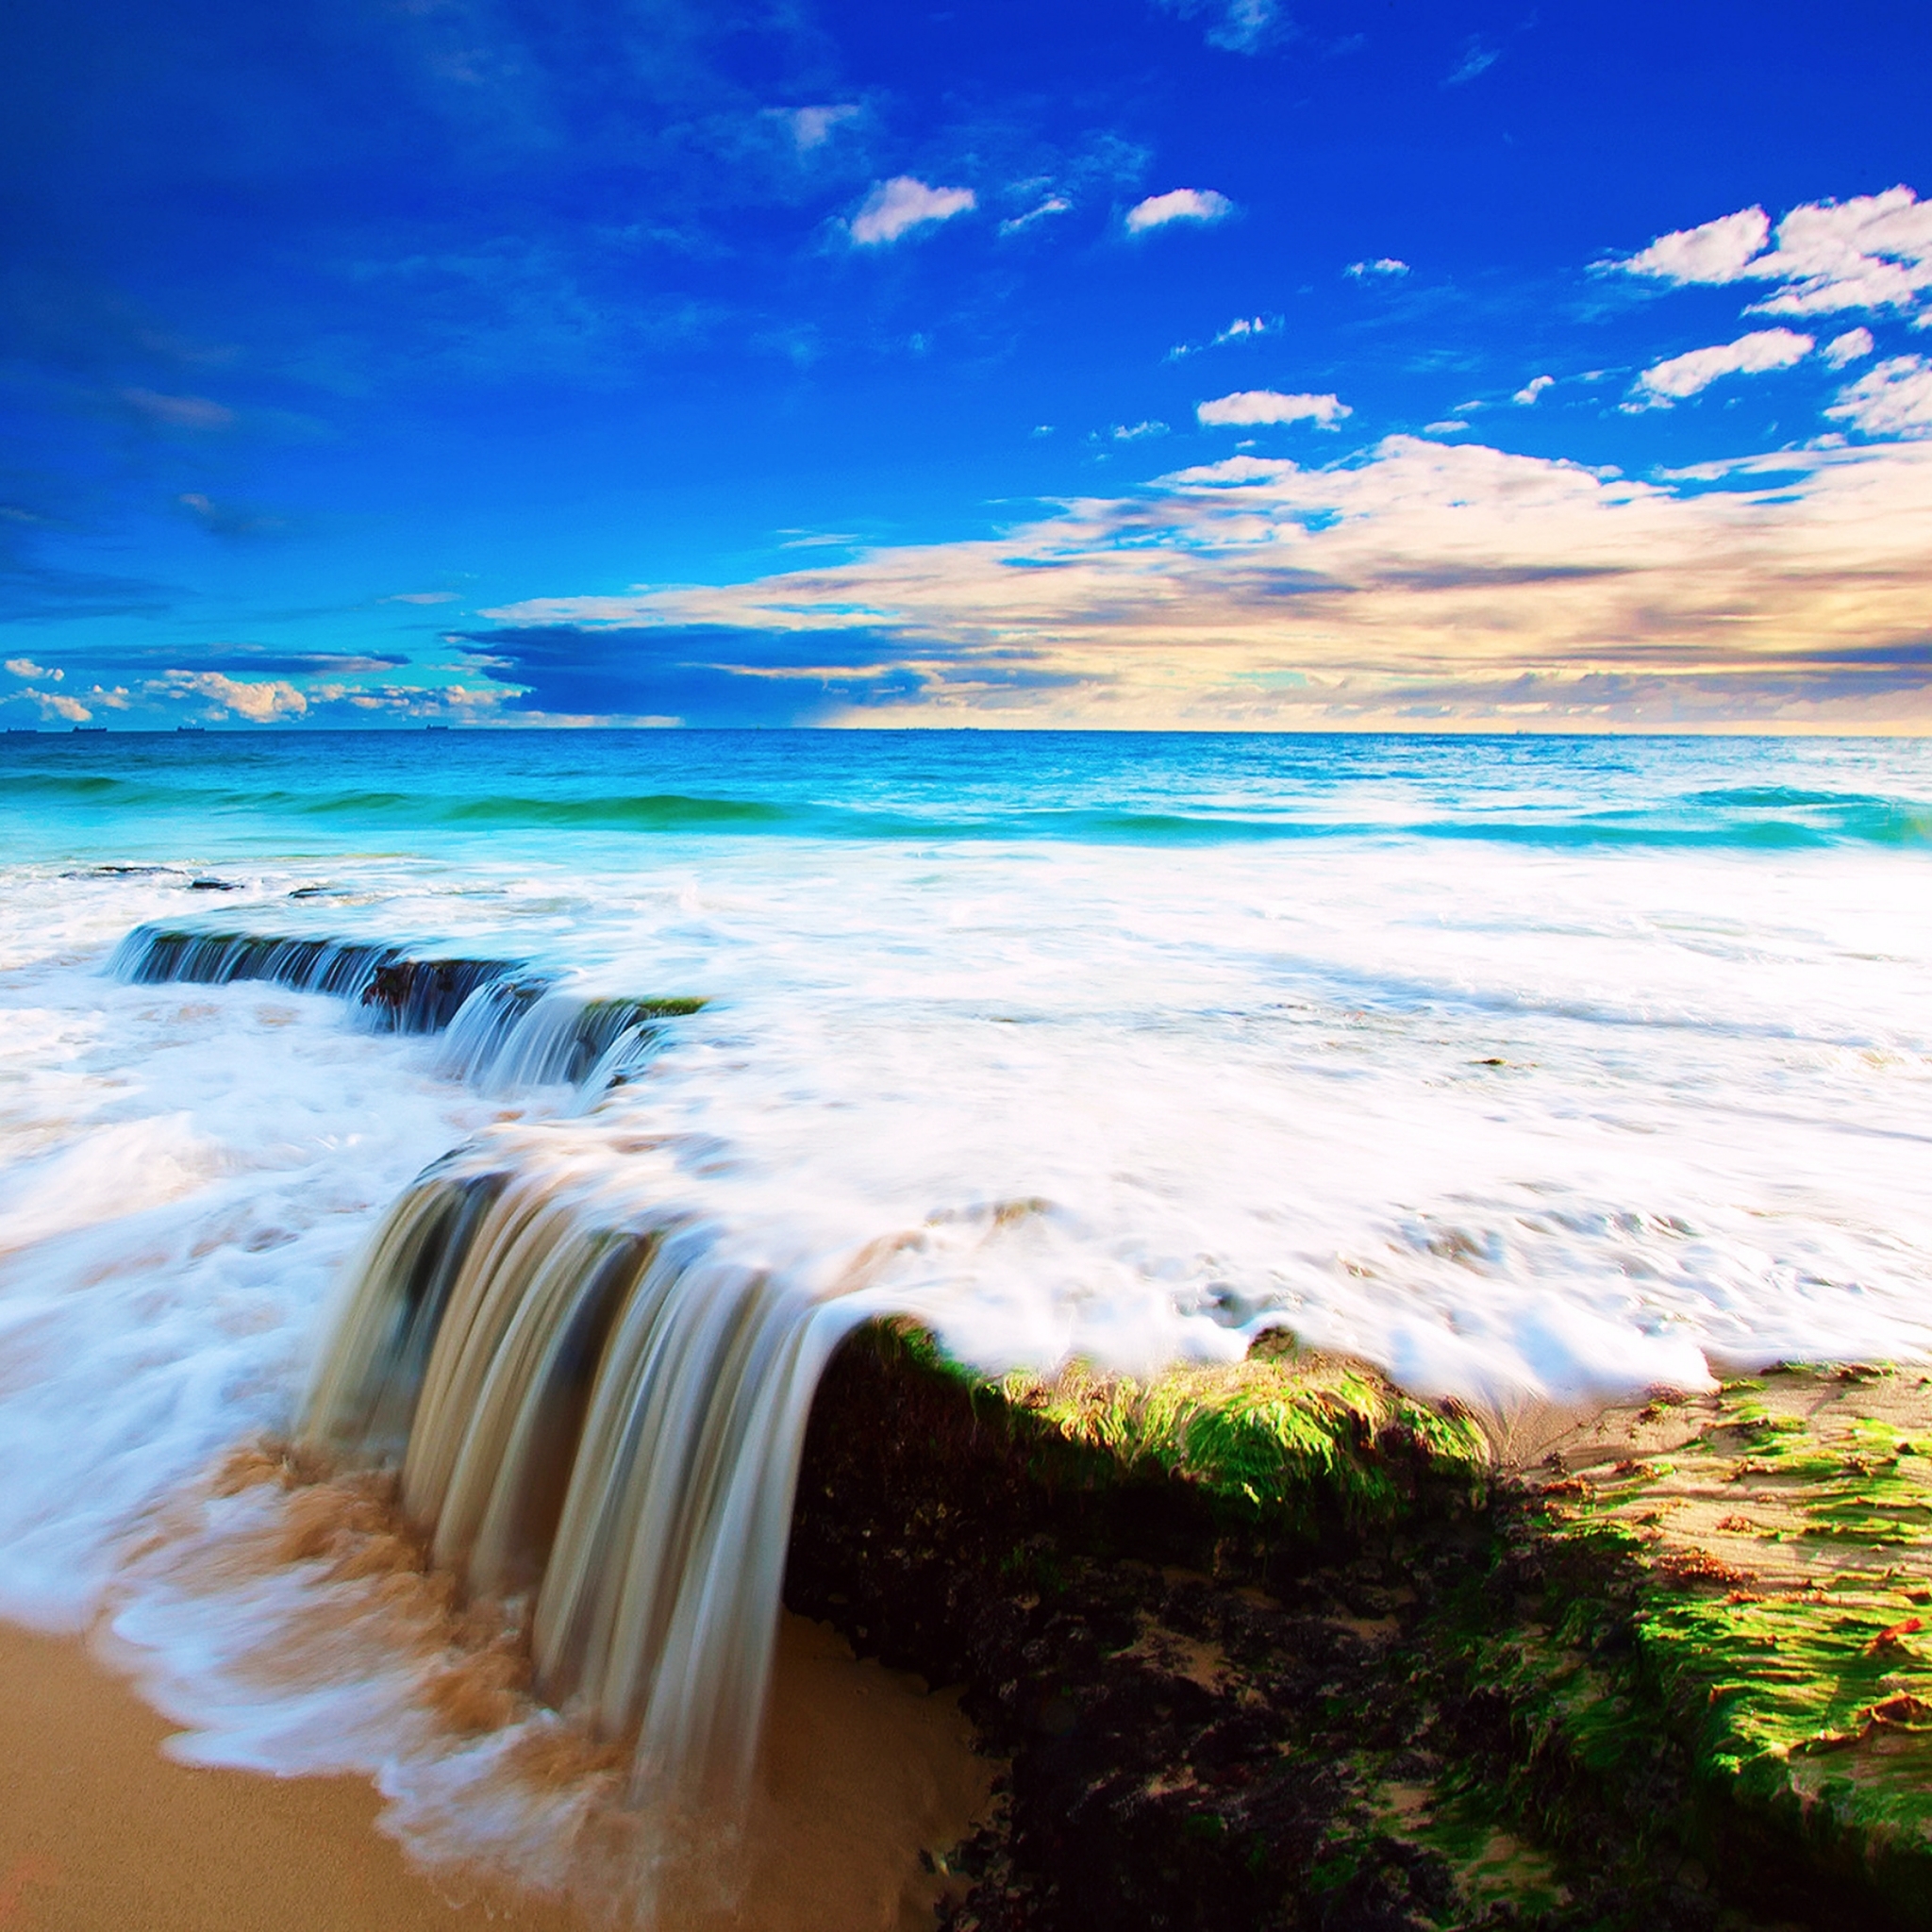 Descarga gratuita de fondo de pantalla para móvil de Naturaleza, Cielo, Mar, Playa, Amanecer, Océano, Tierra/naturaleza.